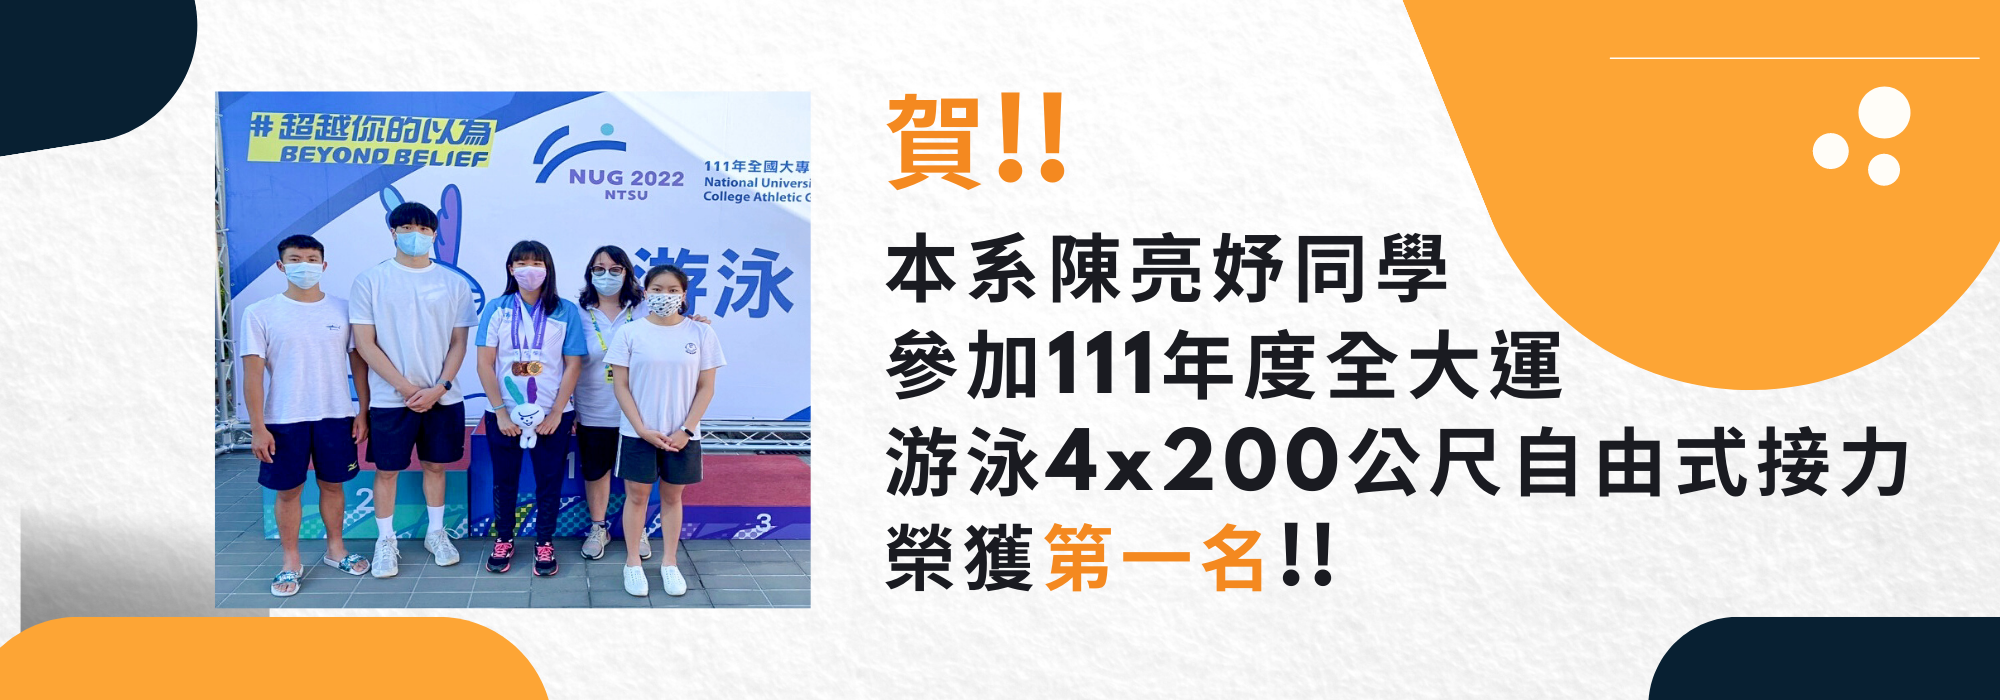 陳亮妤參加111全大運游泳4x200公尺自由式接力第一名